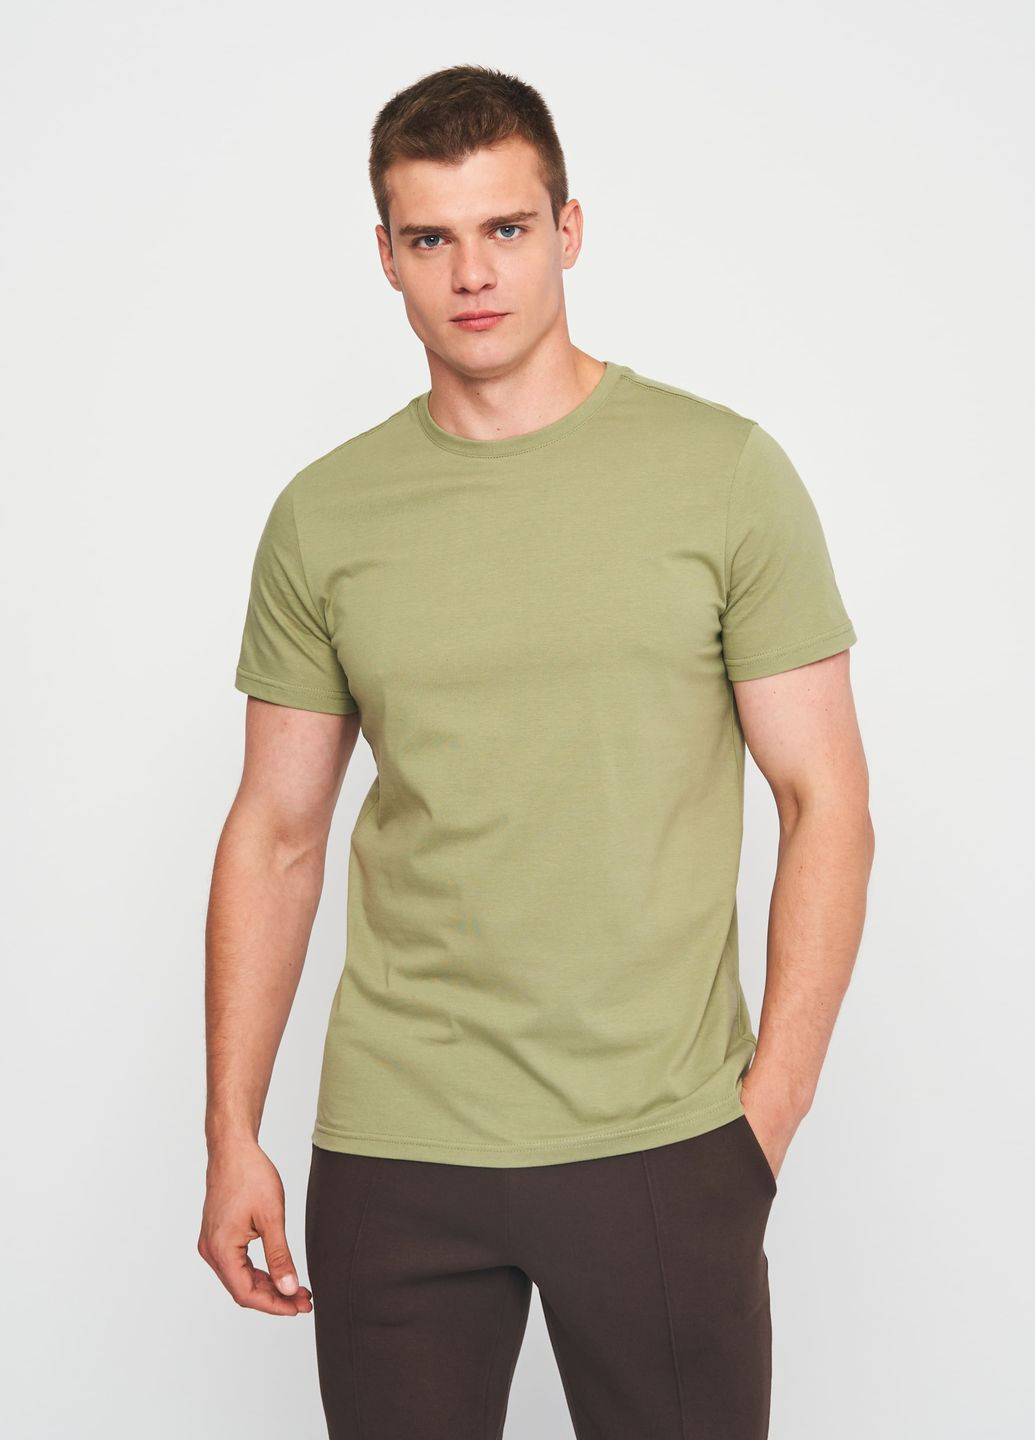 Хаки (оливковая) футболка для мужчин с коротким рукавом Роза